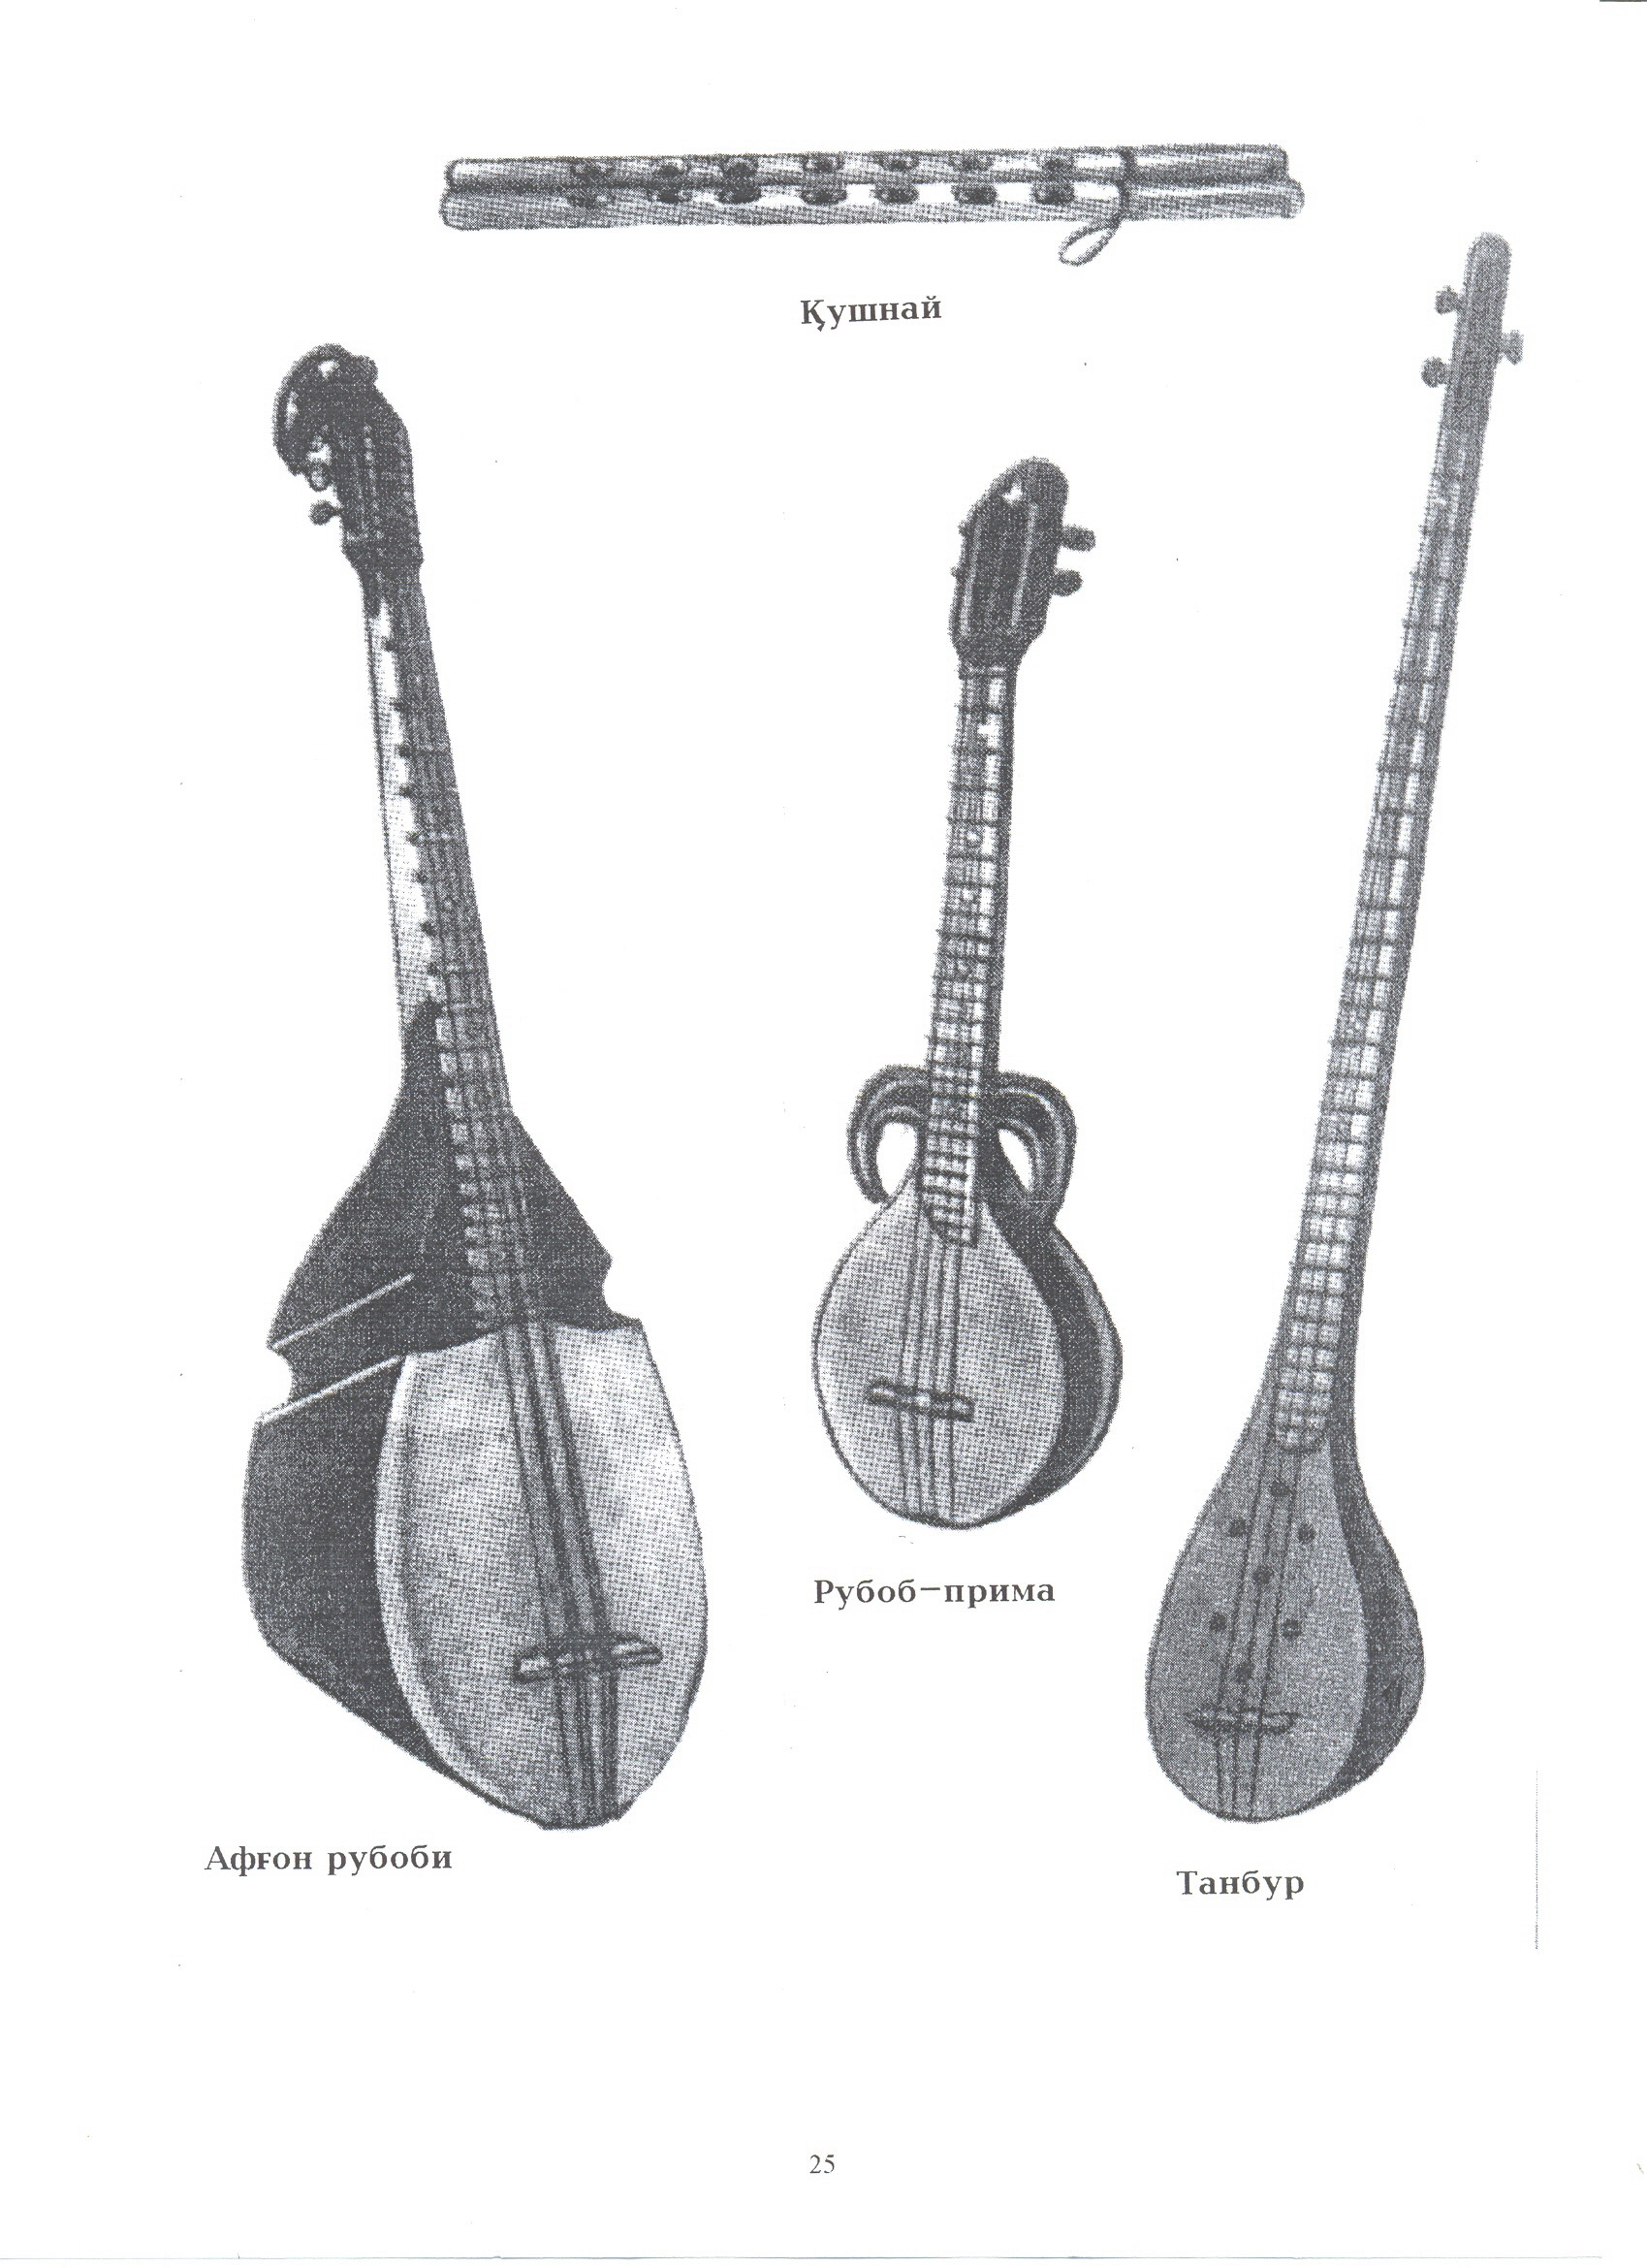 Узбекский музыкальный инструмент танбур